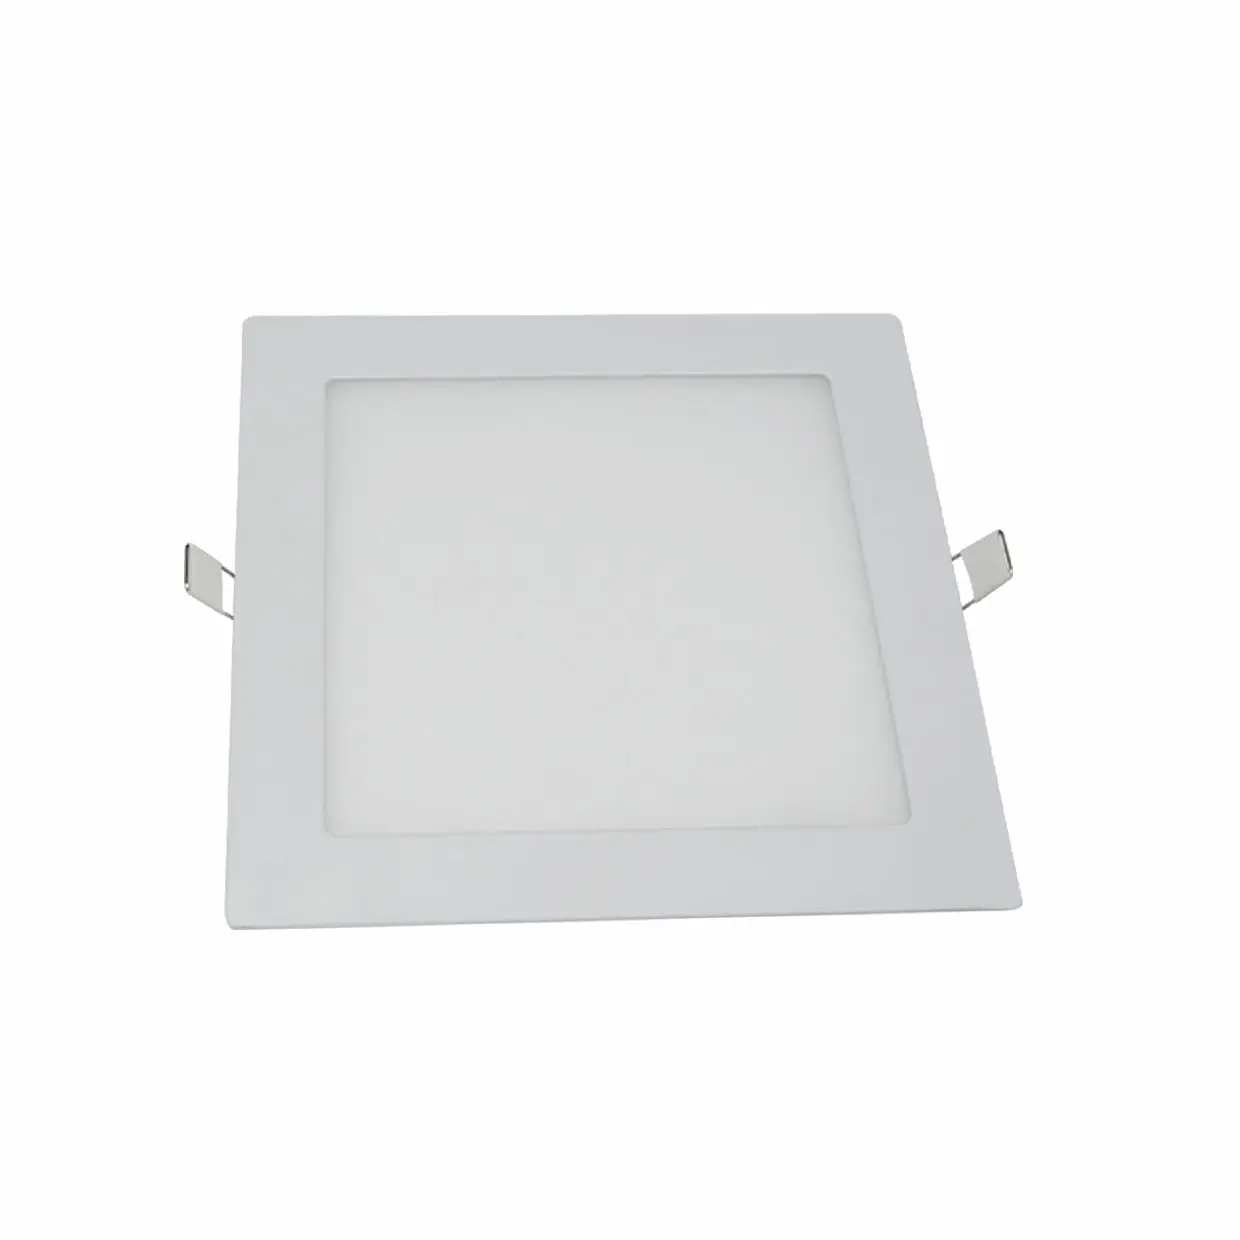 홈 오피스 용 24W 천장 사각 슬림 LED 매입 형 라이트 패널